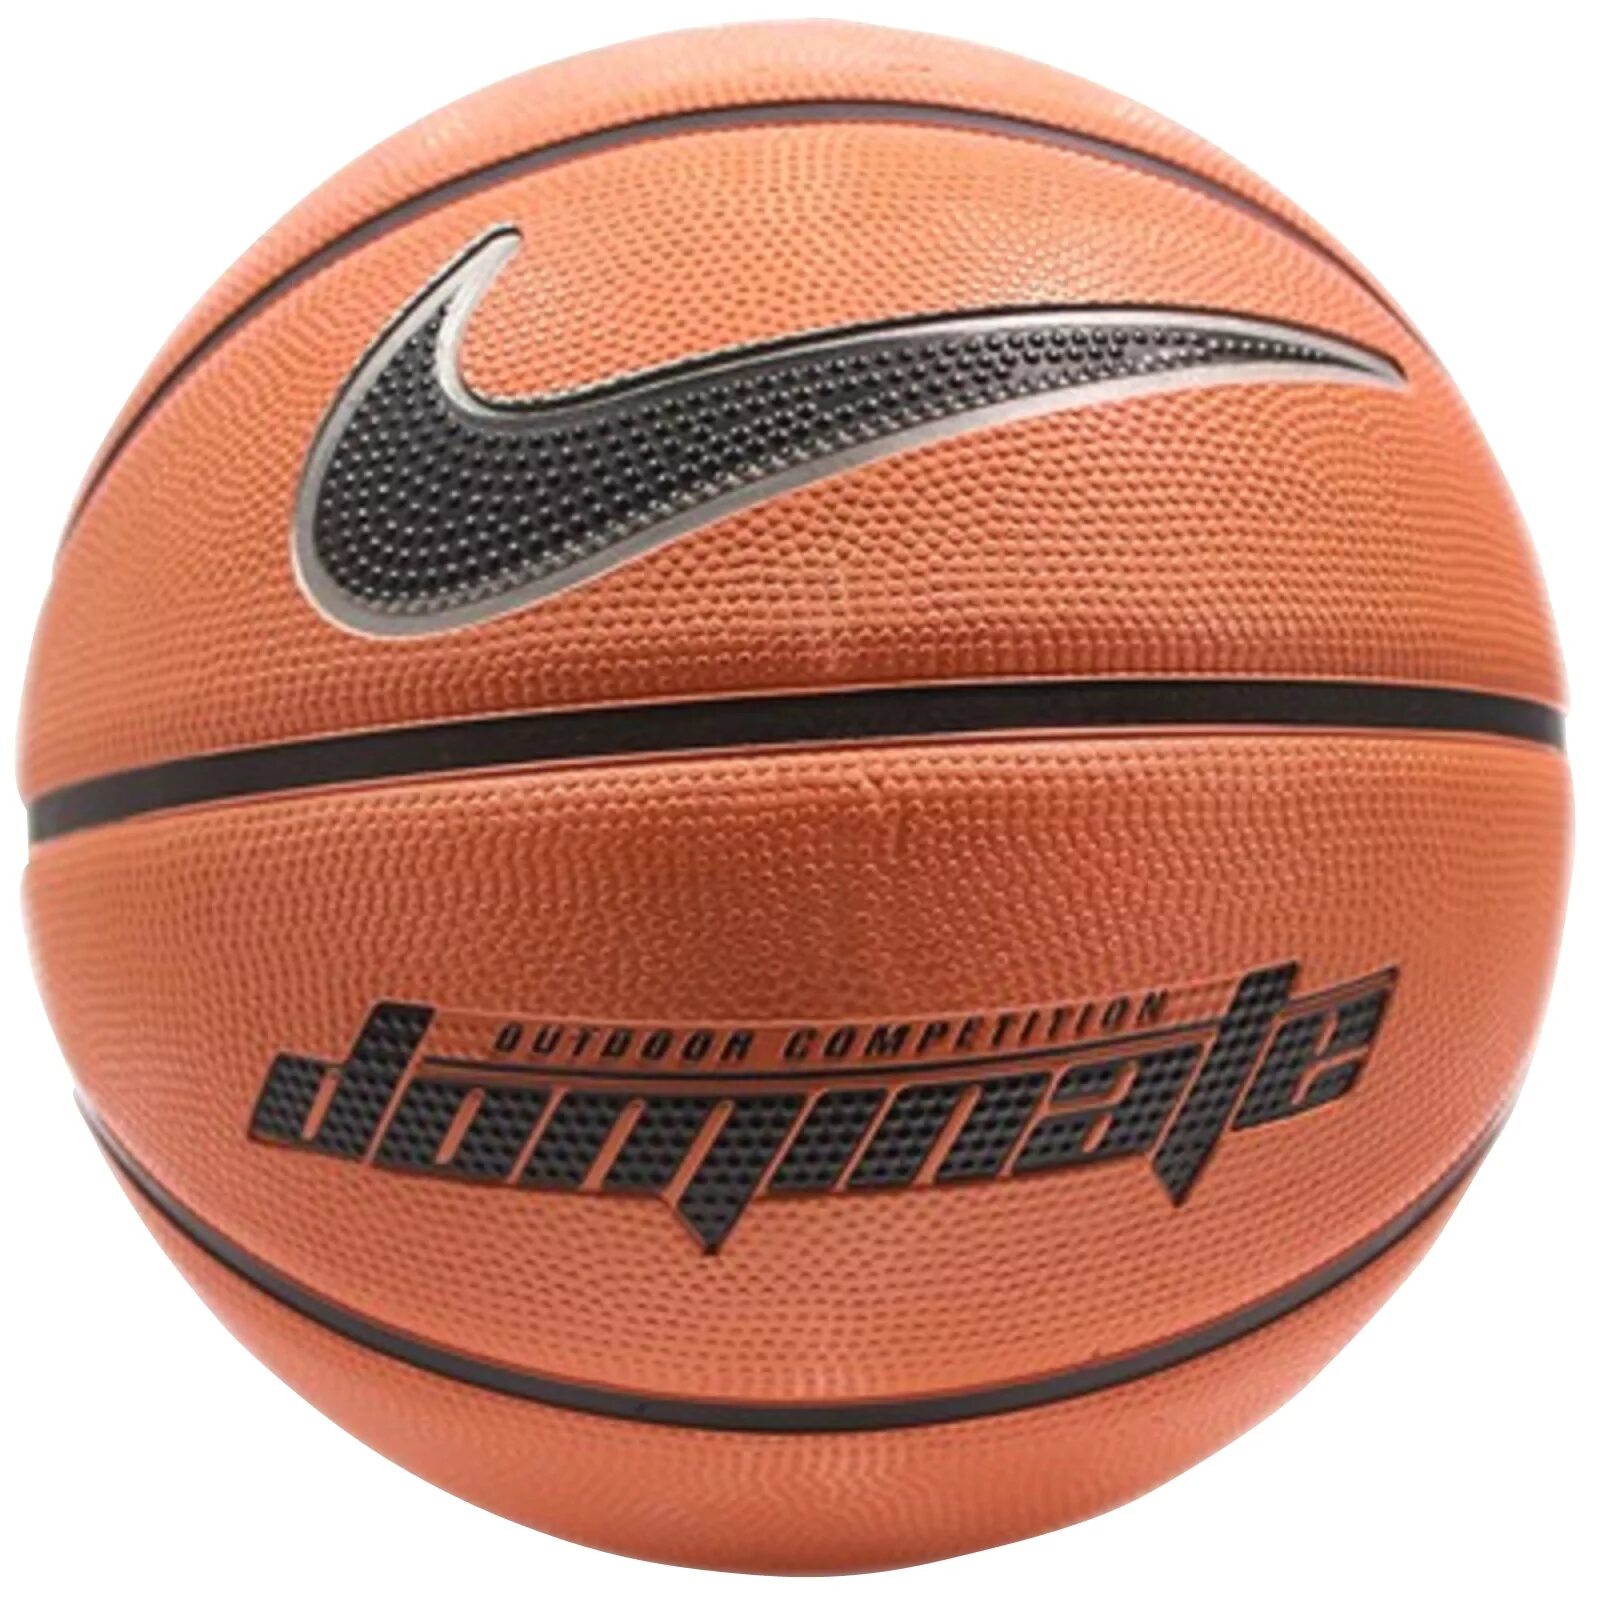 Спортивные магазины баскетбольные мячи. Мяч Nike dominate 7. Баскетбольный мяч Nike dominate. Мячи найк Молтен. Баскетбольный мяч 5 найк.